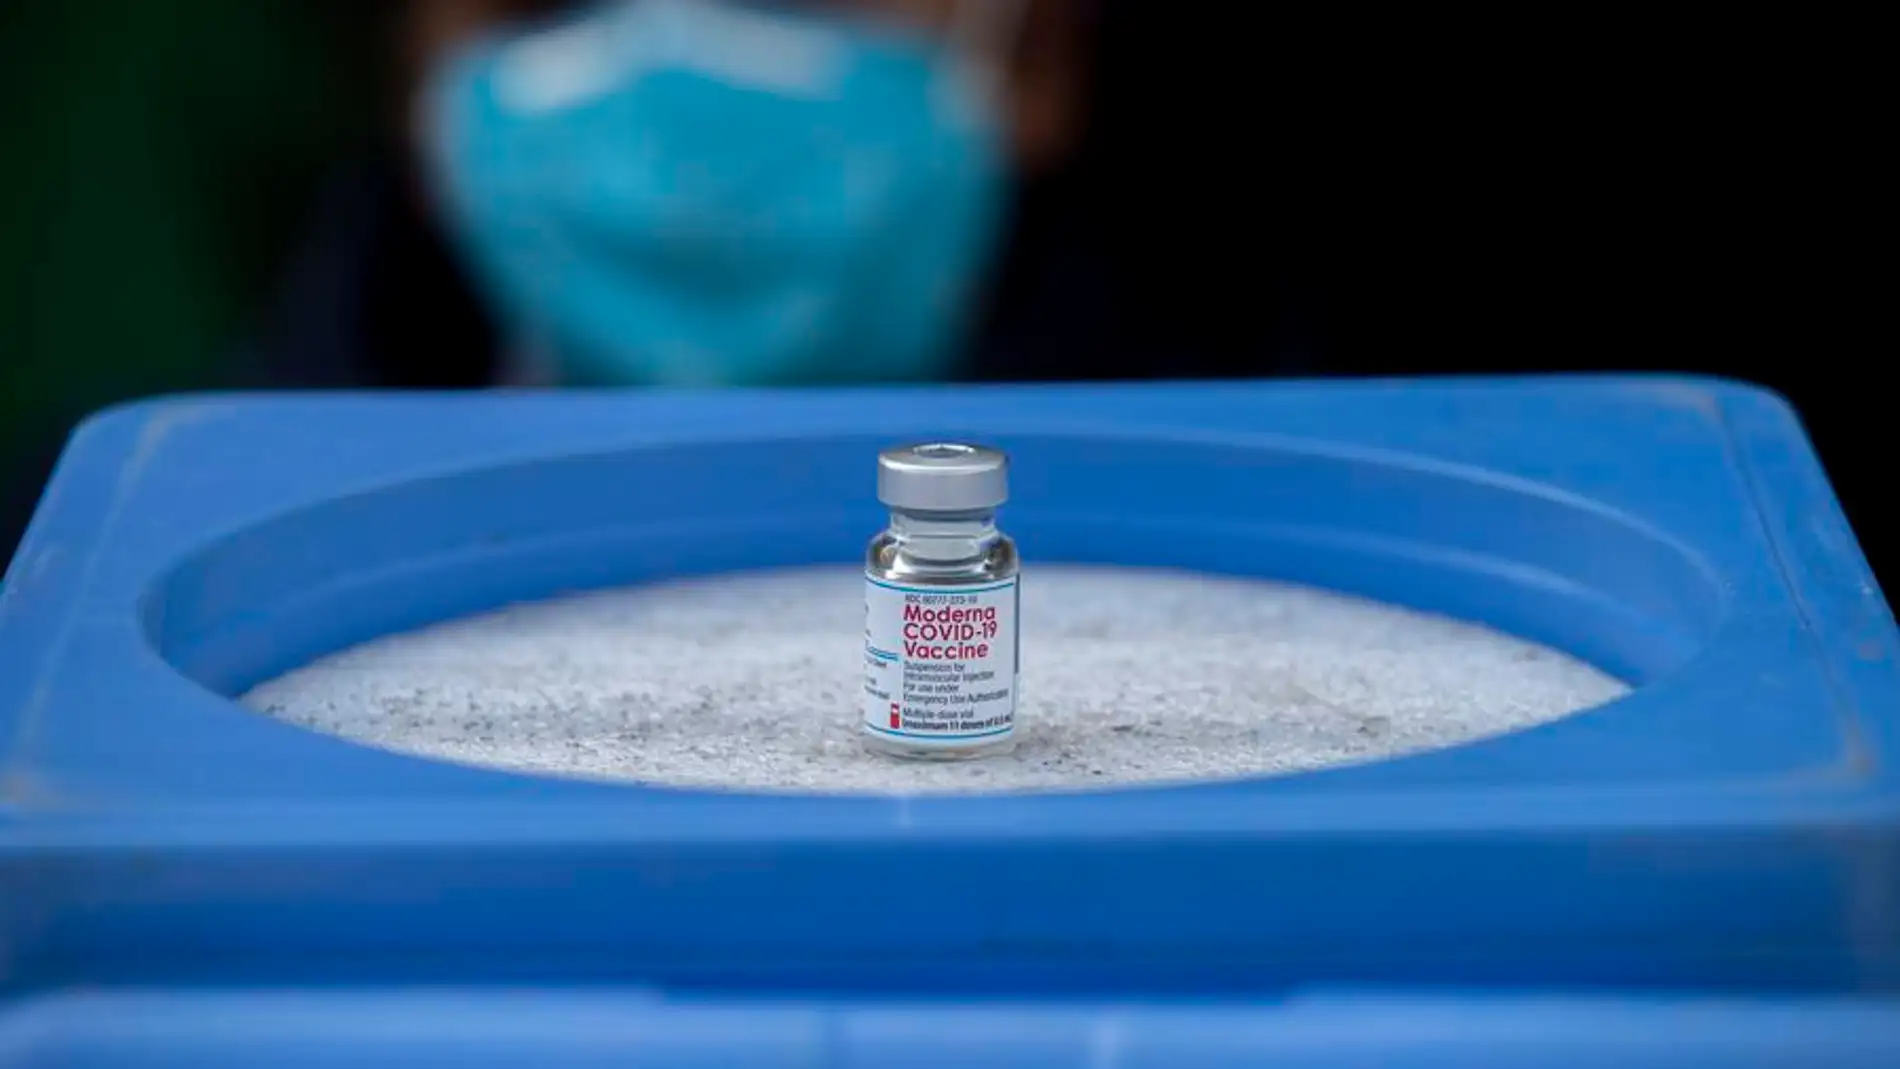 Cuarta dosis vacuna Covid: Moderna promete "potentes" resultados contra las nuevas variantes de ómicron